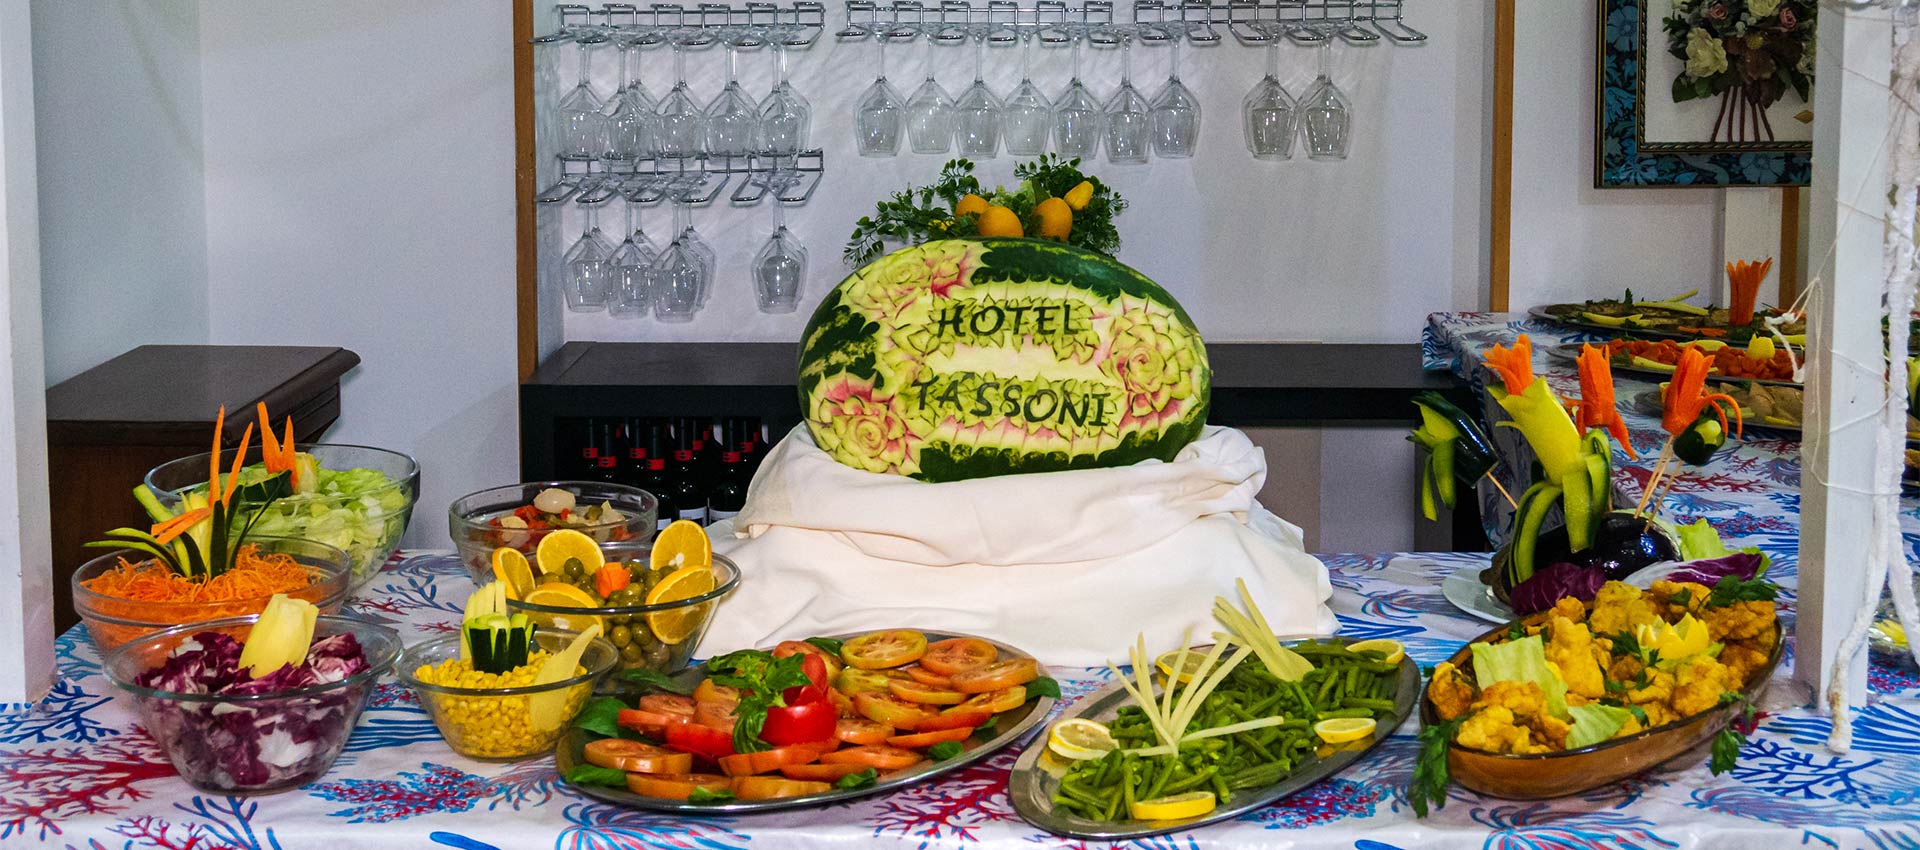 piatti cucina L’Hotel Tassoni è un hotel fronte mare sul lungomare di Alba Adriatica 3 stelle con piscina, minicub e junior club per le vacanze delle famiglie con bambini al mare dell'Abruzzo